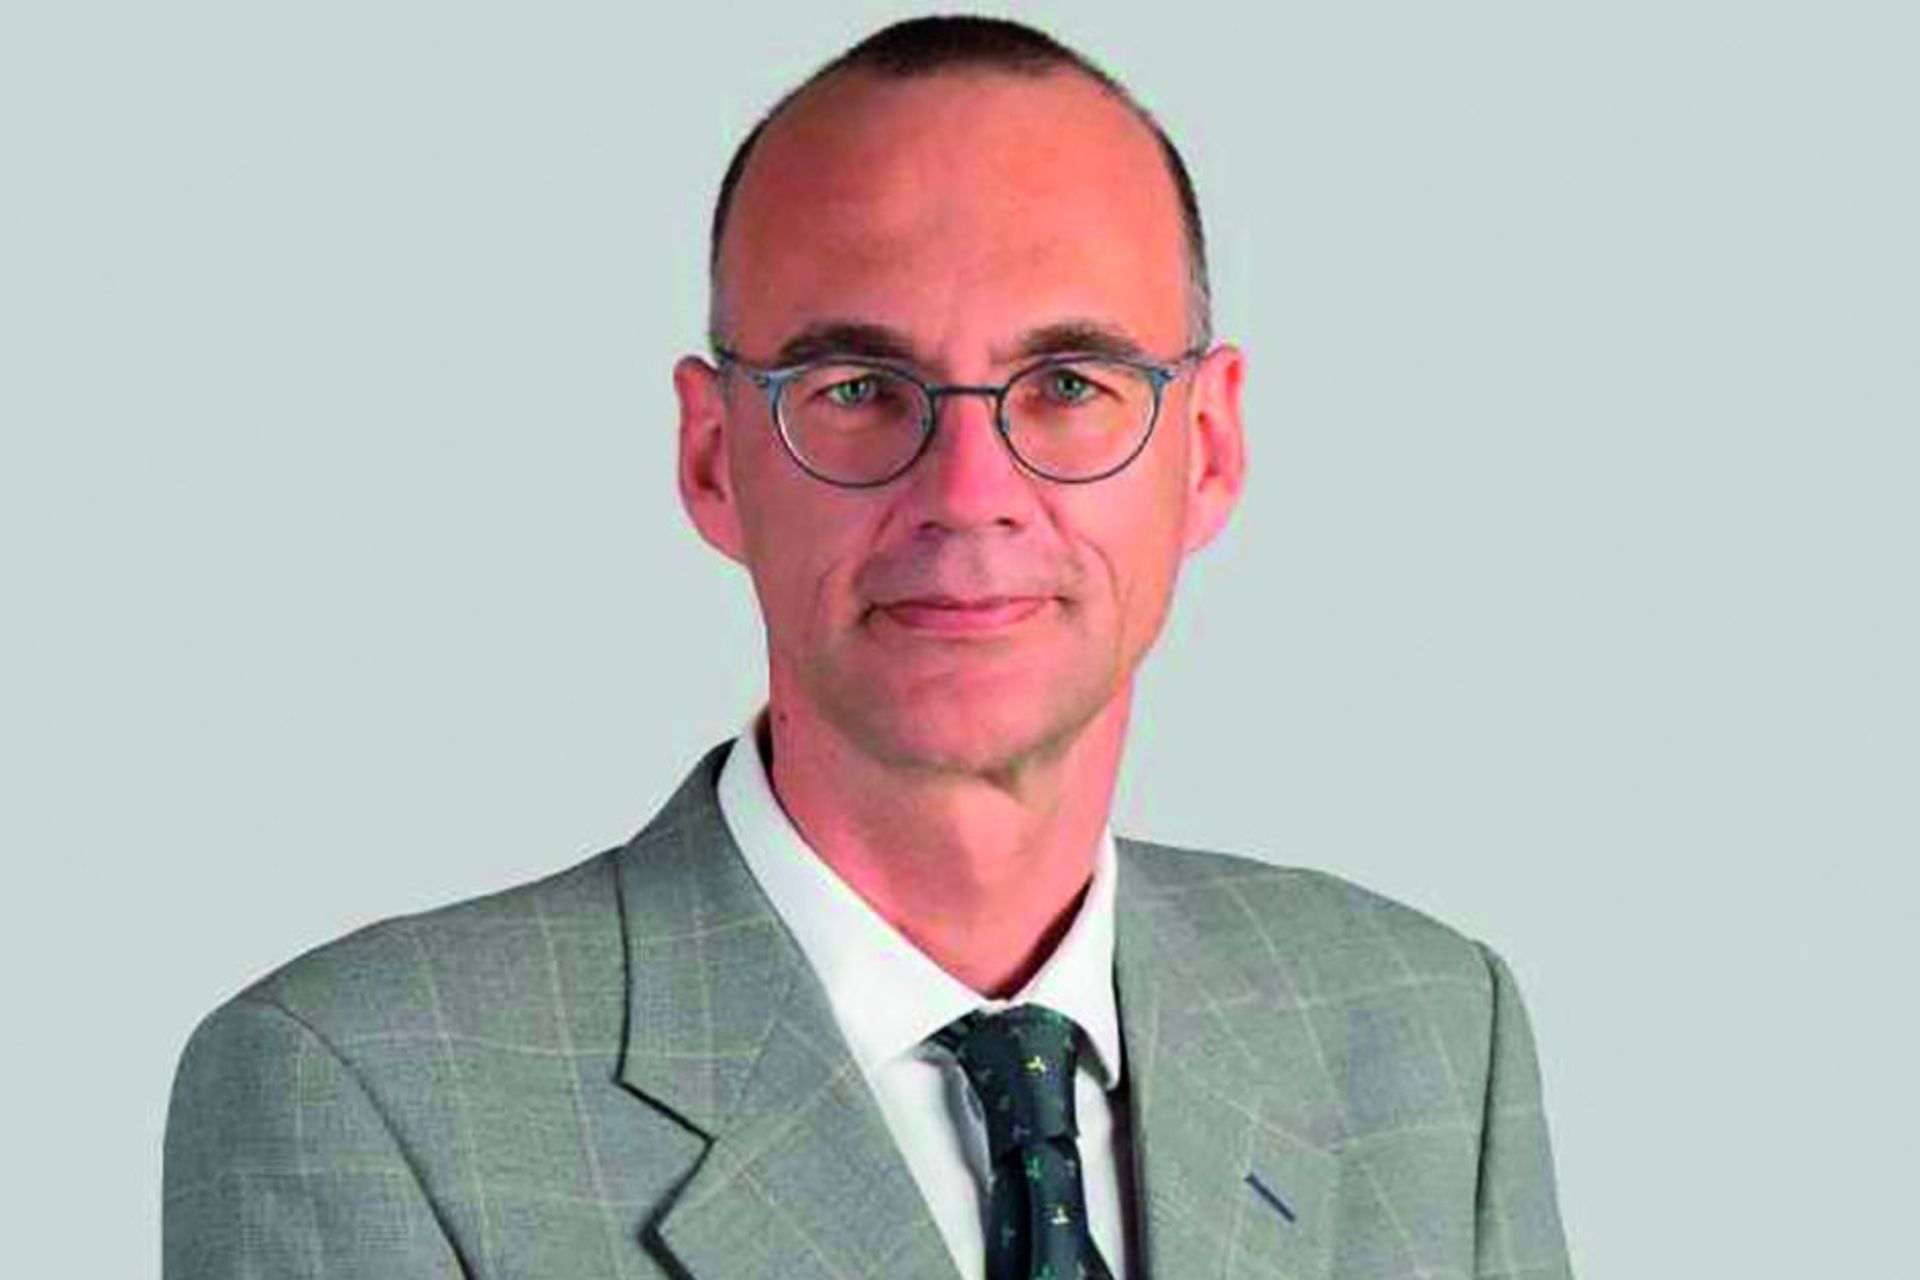 Ernst-Jan Camiel Wit è professore ordinario di statistica e scienza dei dati presso l’Università della Svizzera Italiana